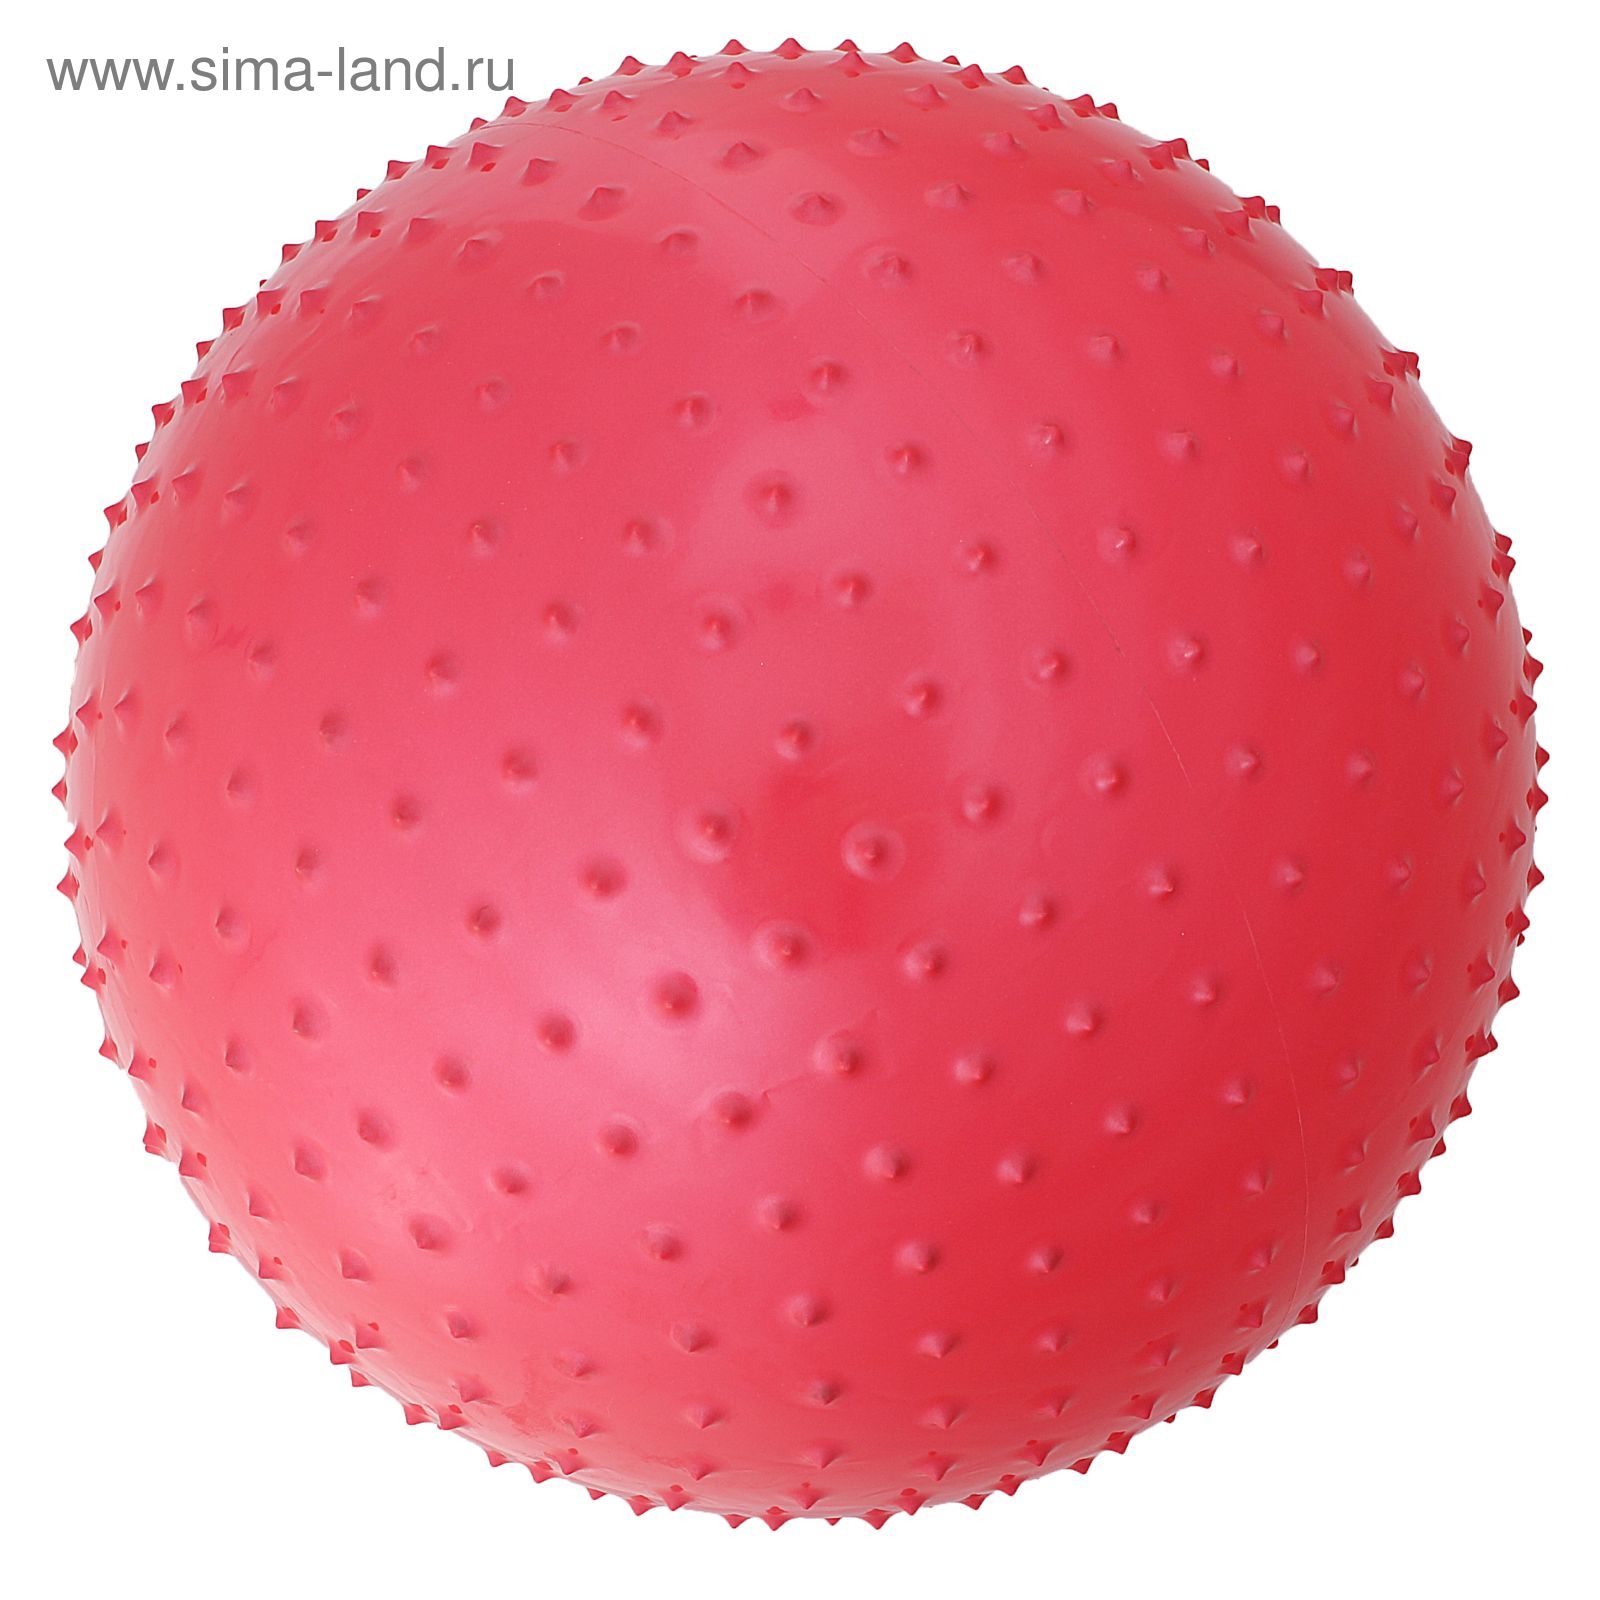 Мяч гимнастический массажный d=55см 600 гр, цвета МИКС